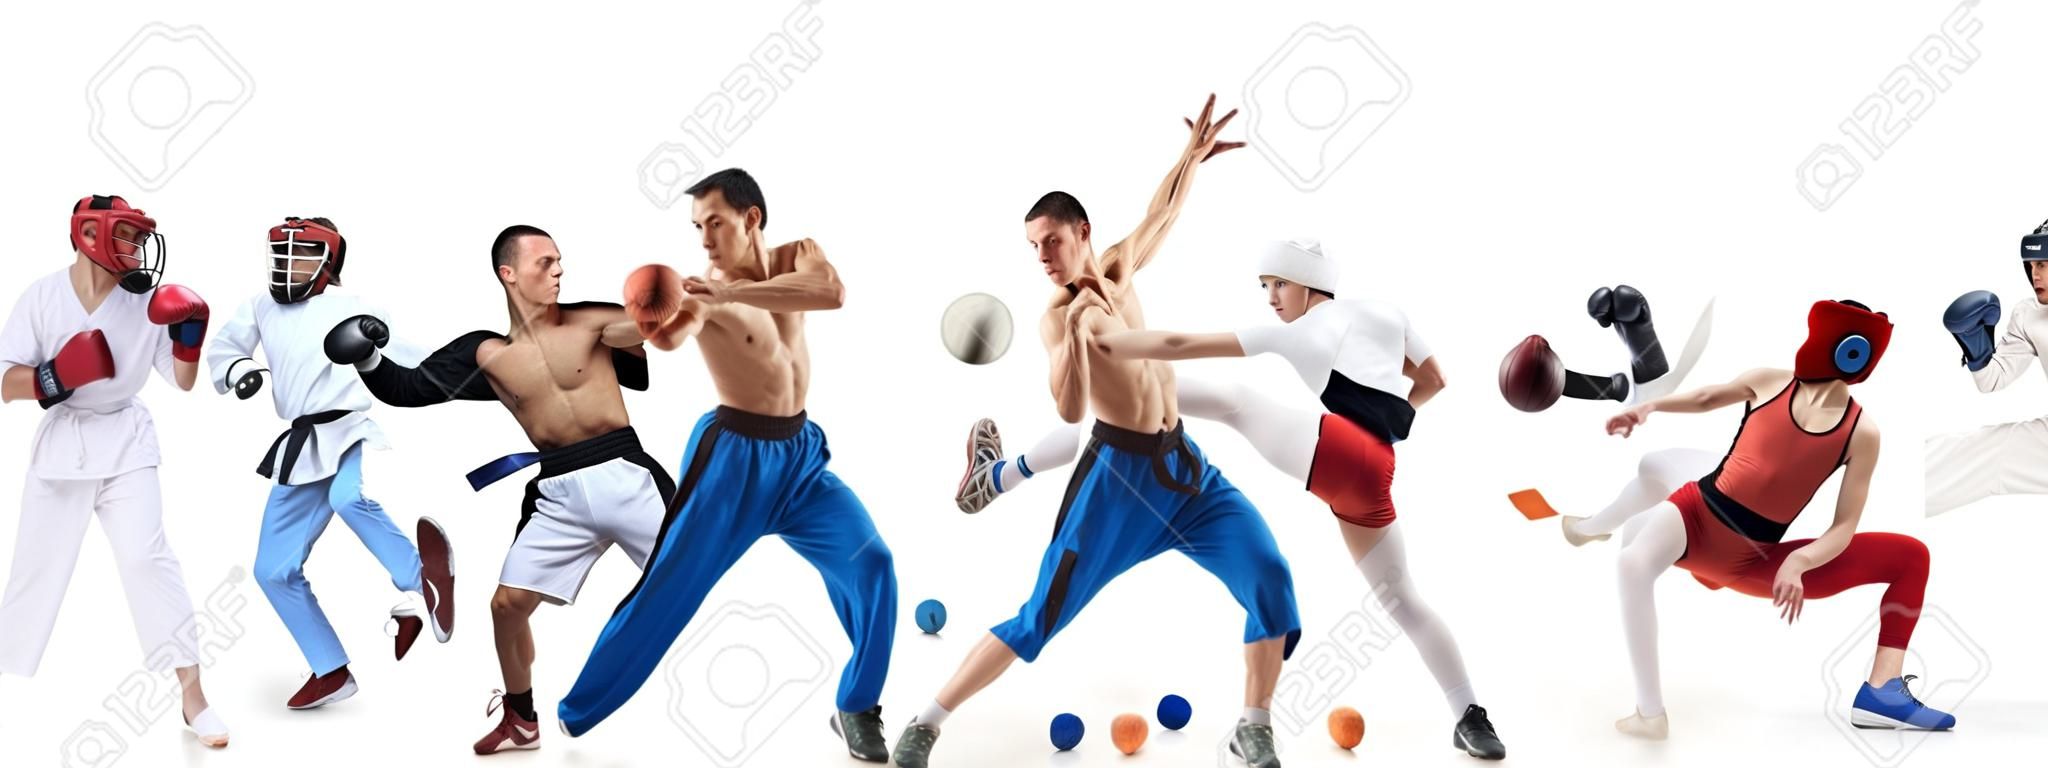 ボクシング、サッカー、アメリカンフットボール、バスケットボール、アイスホッケー、フェンシング、ジョギング、テコンドー、テニスに関するスポーツコラージュ